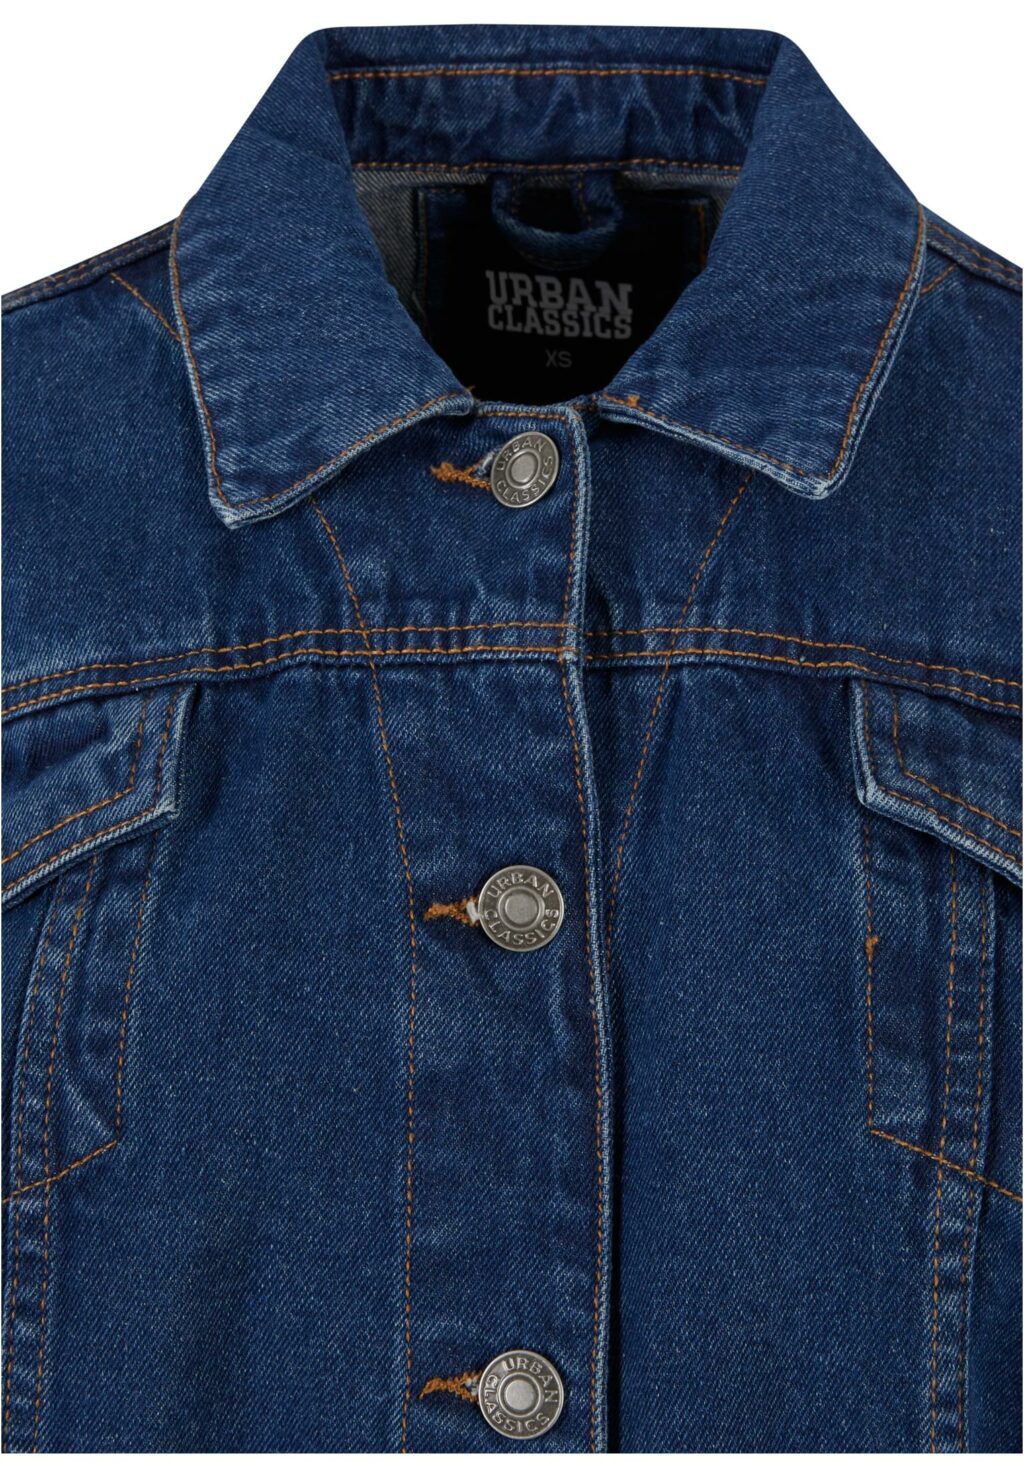 Urban Classics Ladies Oversized 90s Denim Jacket mid indigo washed TB6208